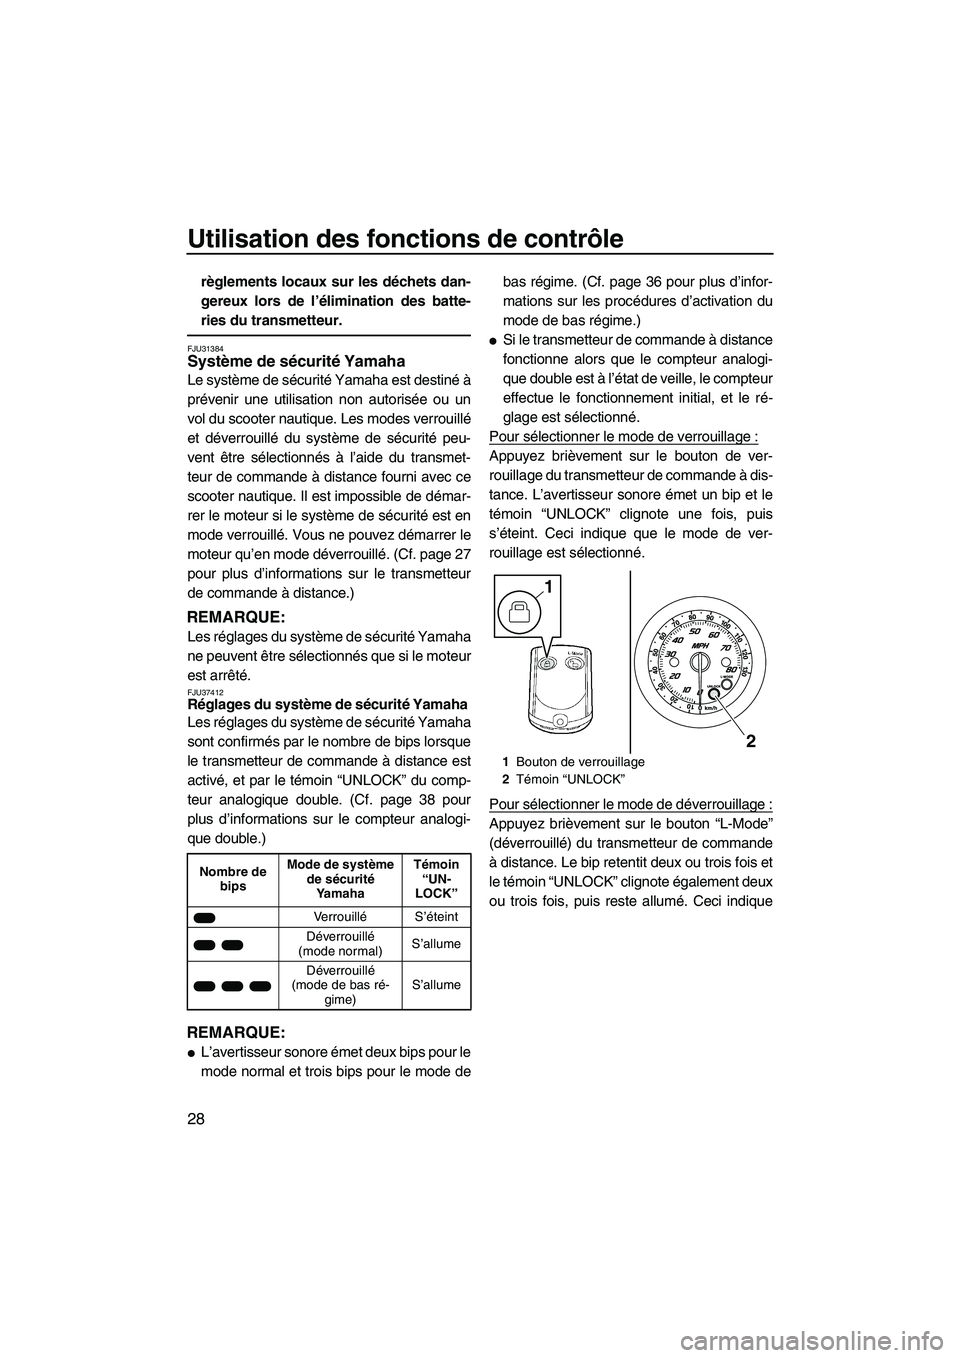 YAMAHA FZS 2010  Notices Demploi (in French) Utilisation des fonctions de contrôle
28
règlements locaux sur les déchets dan-
gereux lors de l’élimination des batte-
ries du transmetteur.
FJU31384Système de sécurité Yamaha 
Le système d